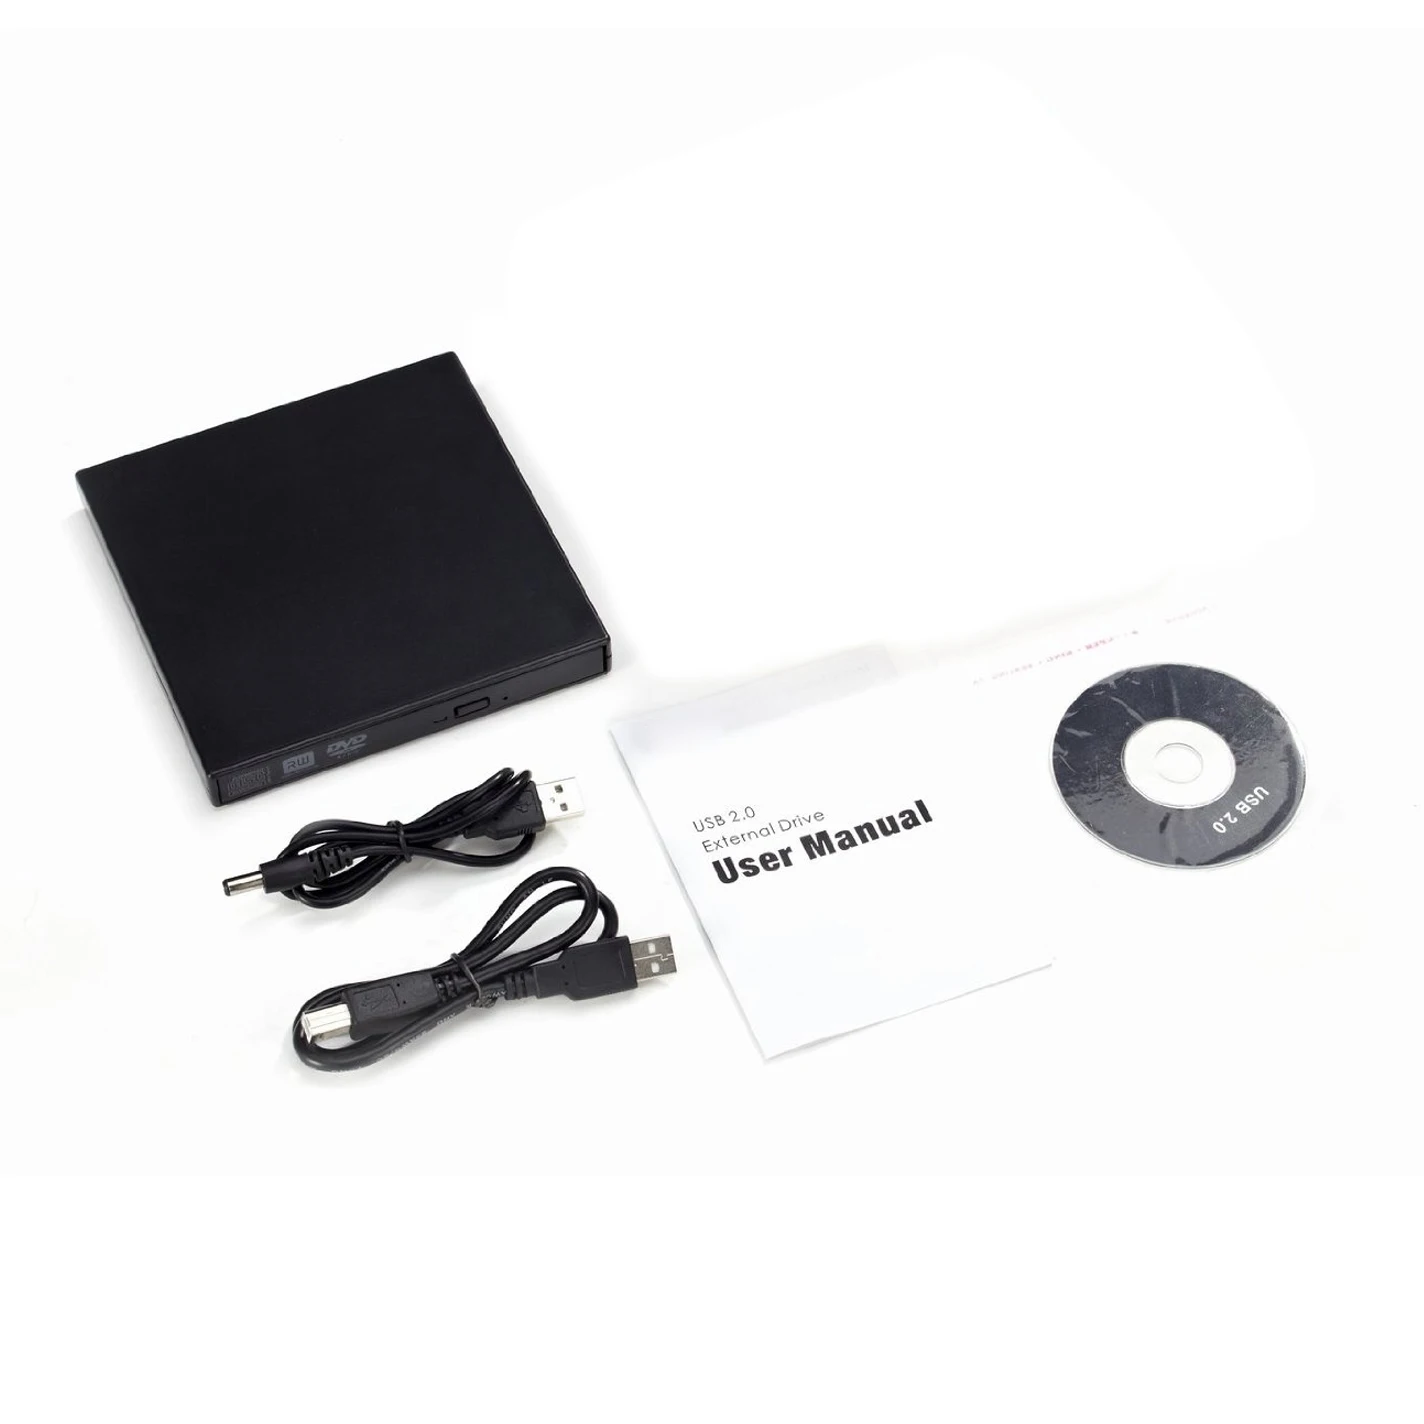 Портативный тонкий внешний USB DVDROM устройство для записи DVDRW писатель оптический привод для ноутбука нетбук ноутбук PC черный